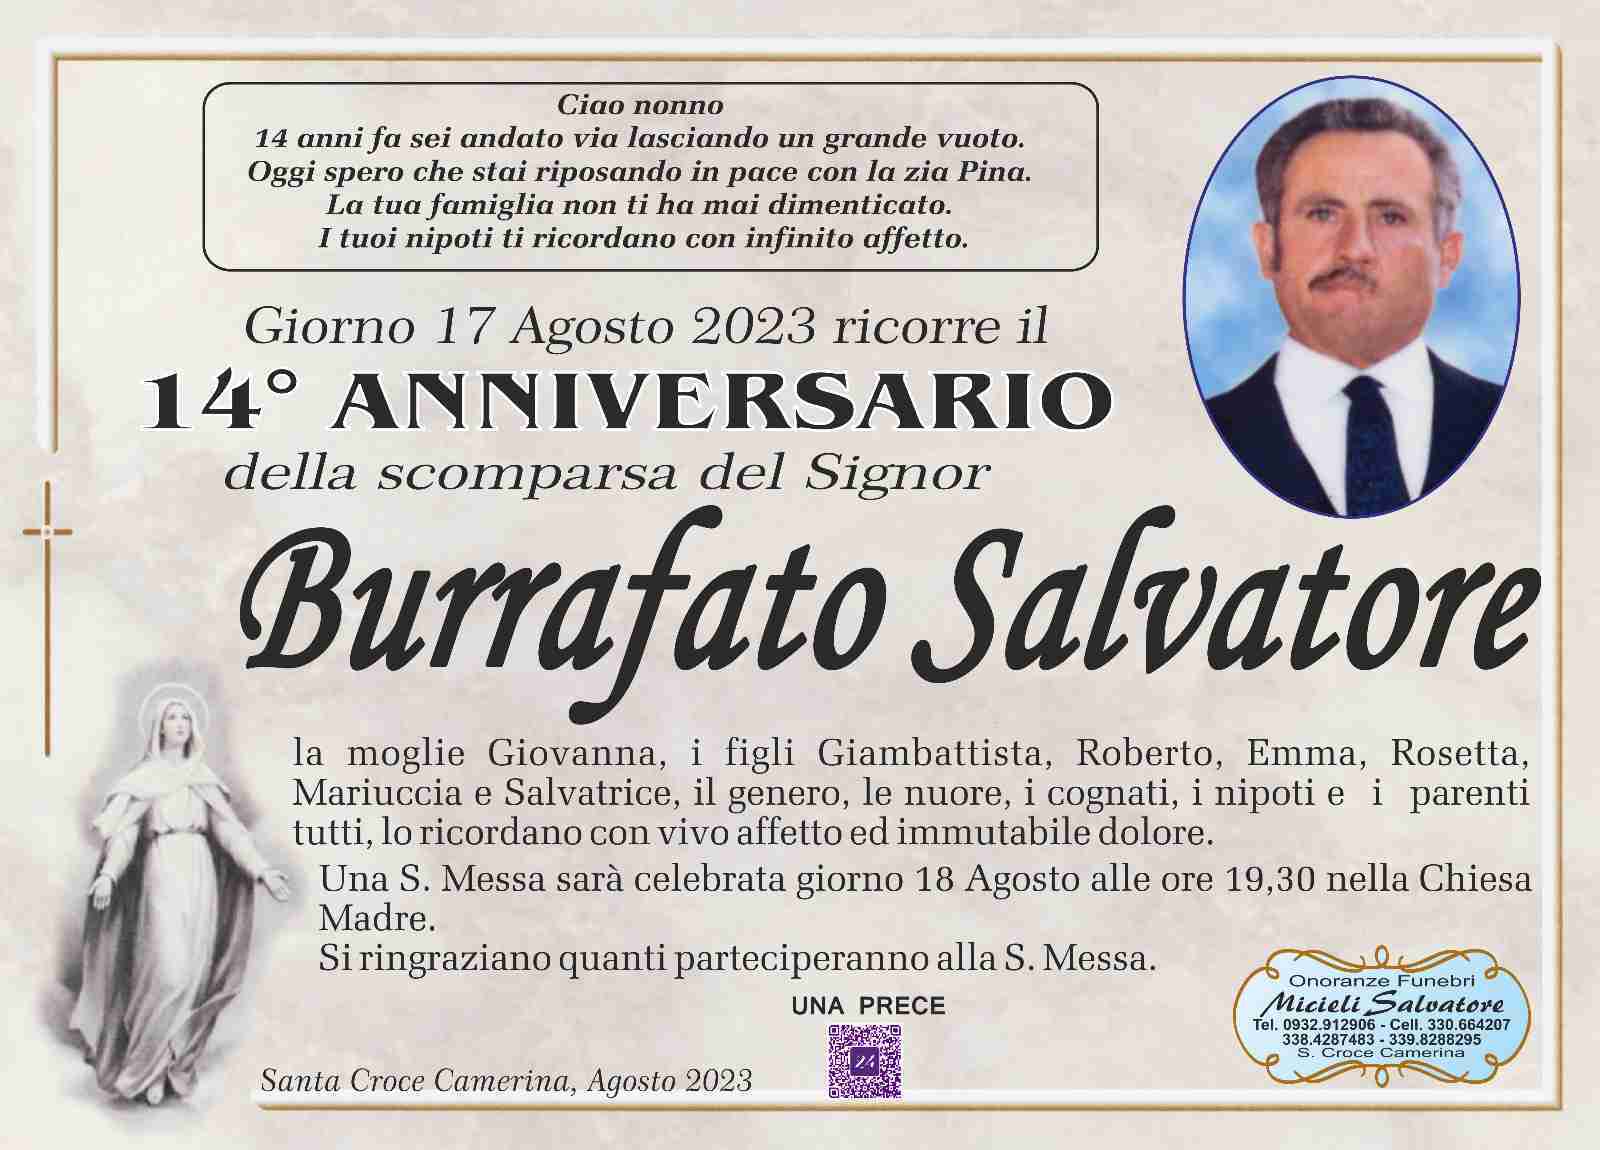 Salvatore Burrafato